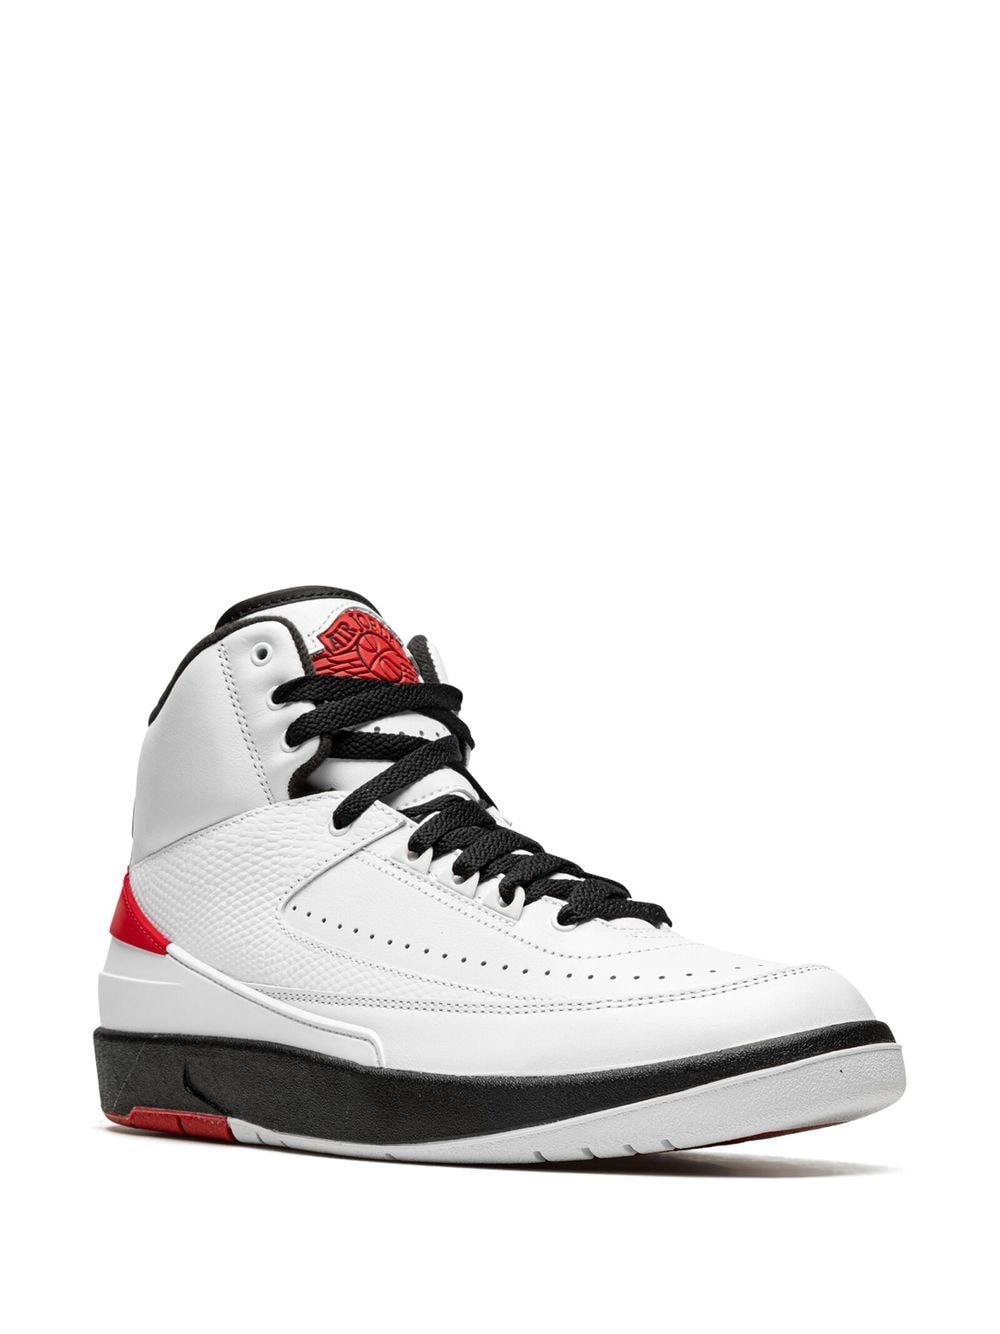 Image 2 of Jordan Air Jordan 2 Retro OG "Chicago 2022" sneakers